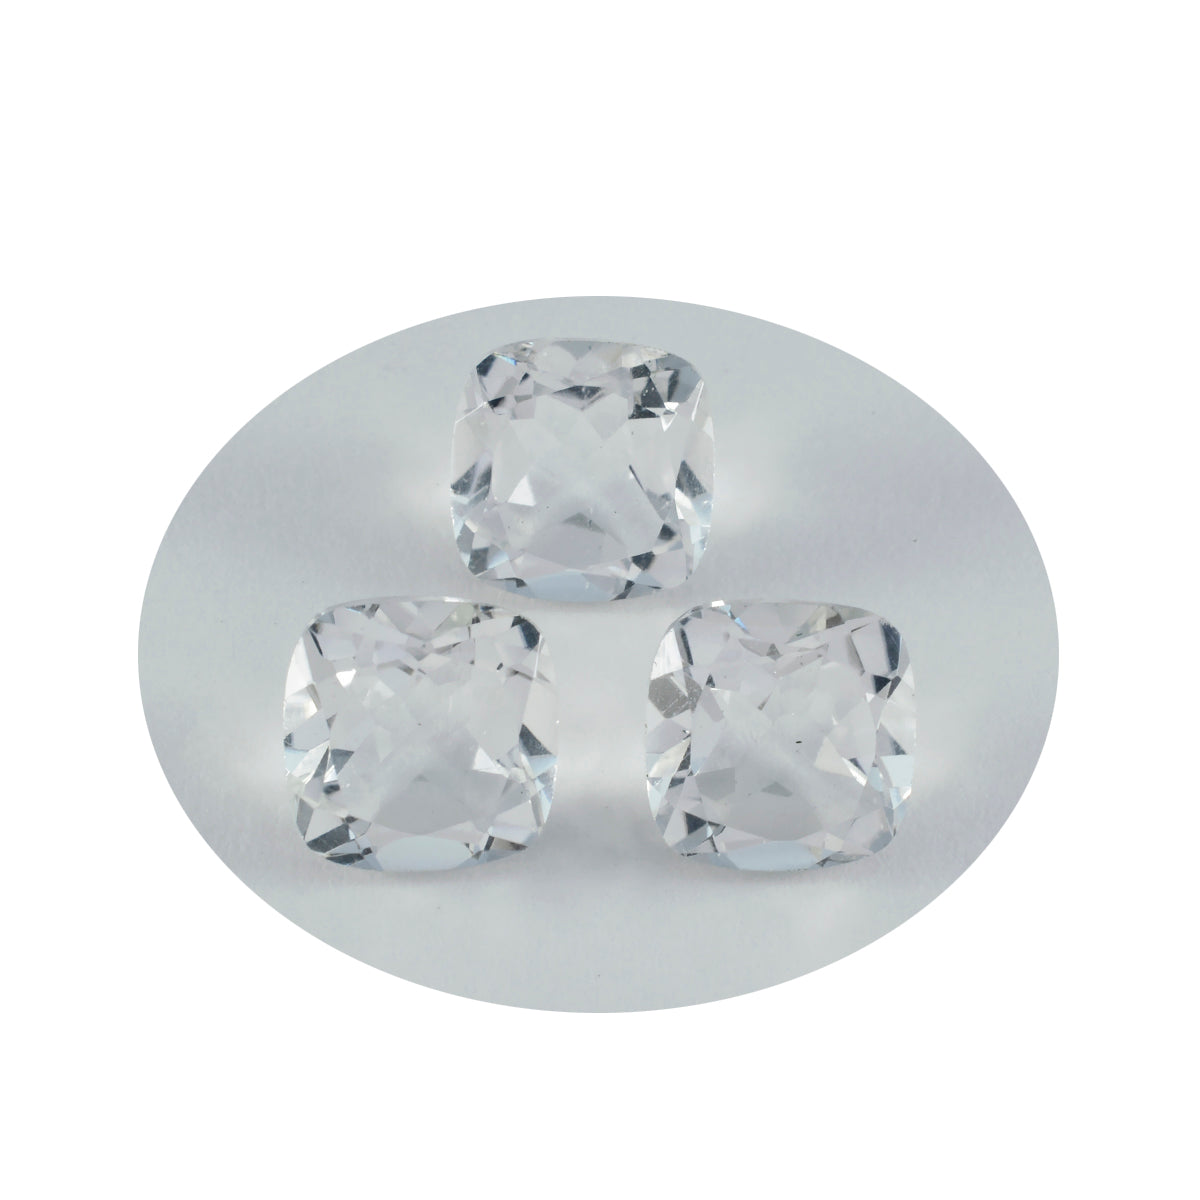 Riyogems 1PC Wit Kristal Kwarts Facet 10x10 mm Kussenvorm mooie kwaliteit losse steen